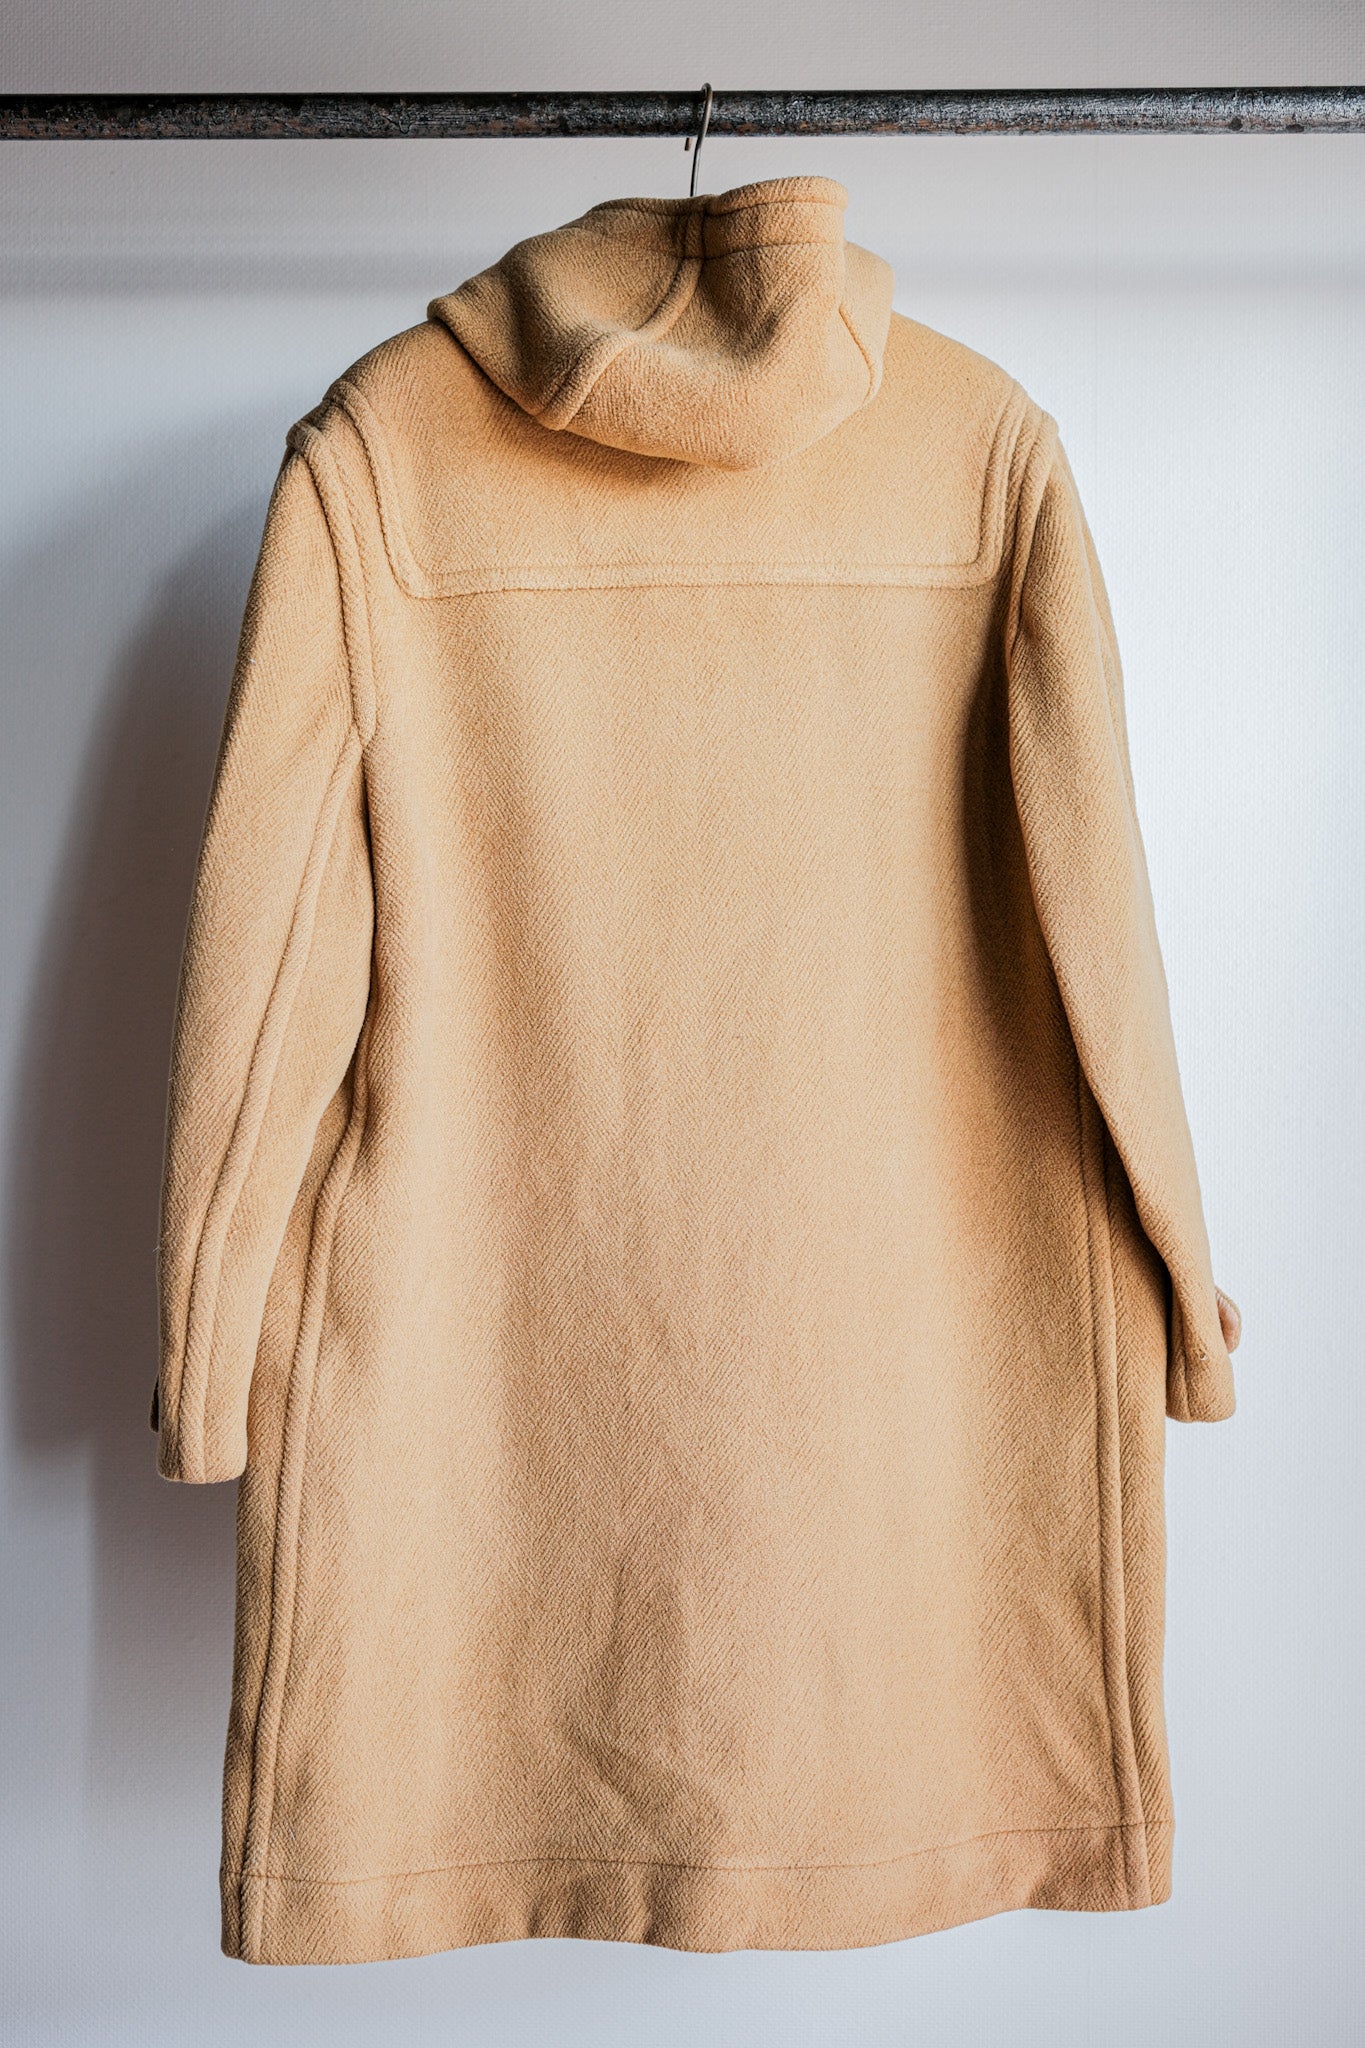 [~ 90's] Invertere เก่า HBT Wool Duffle Coat Size.38r "Moorbrook"